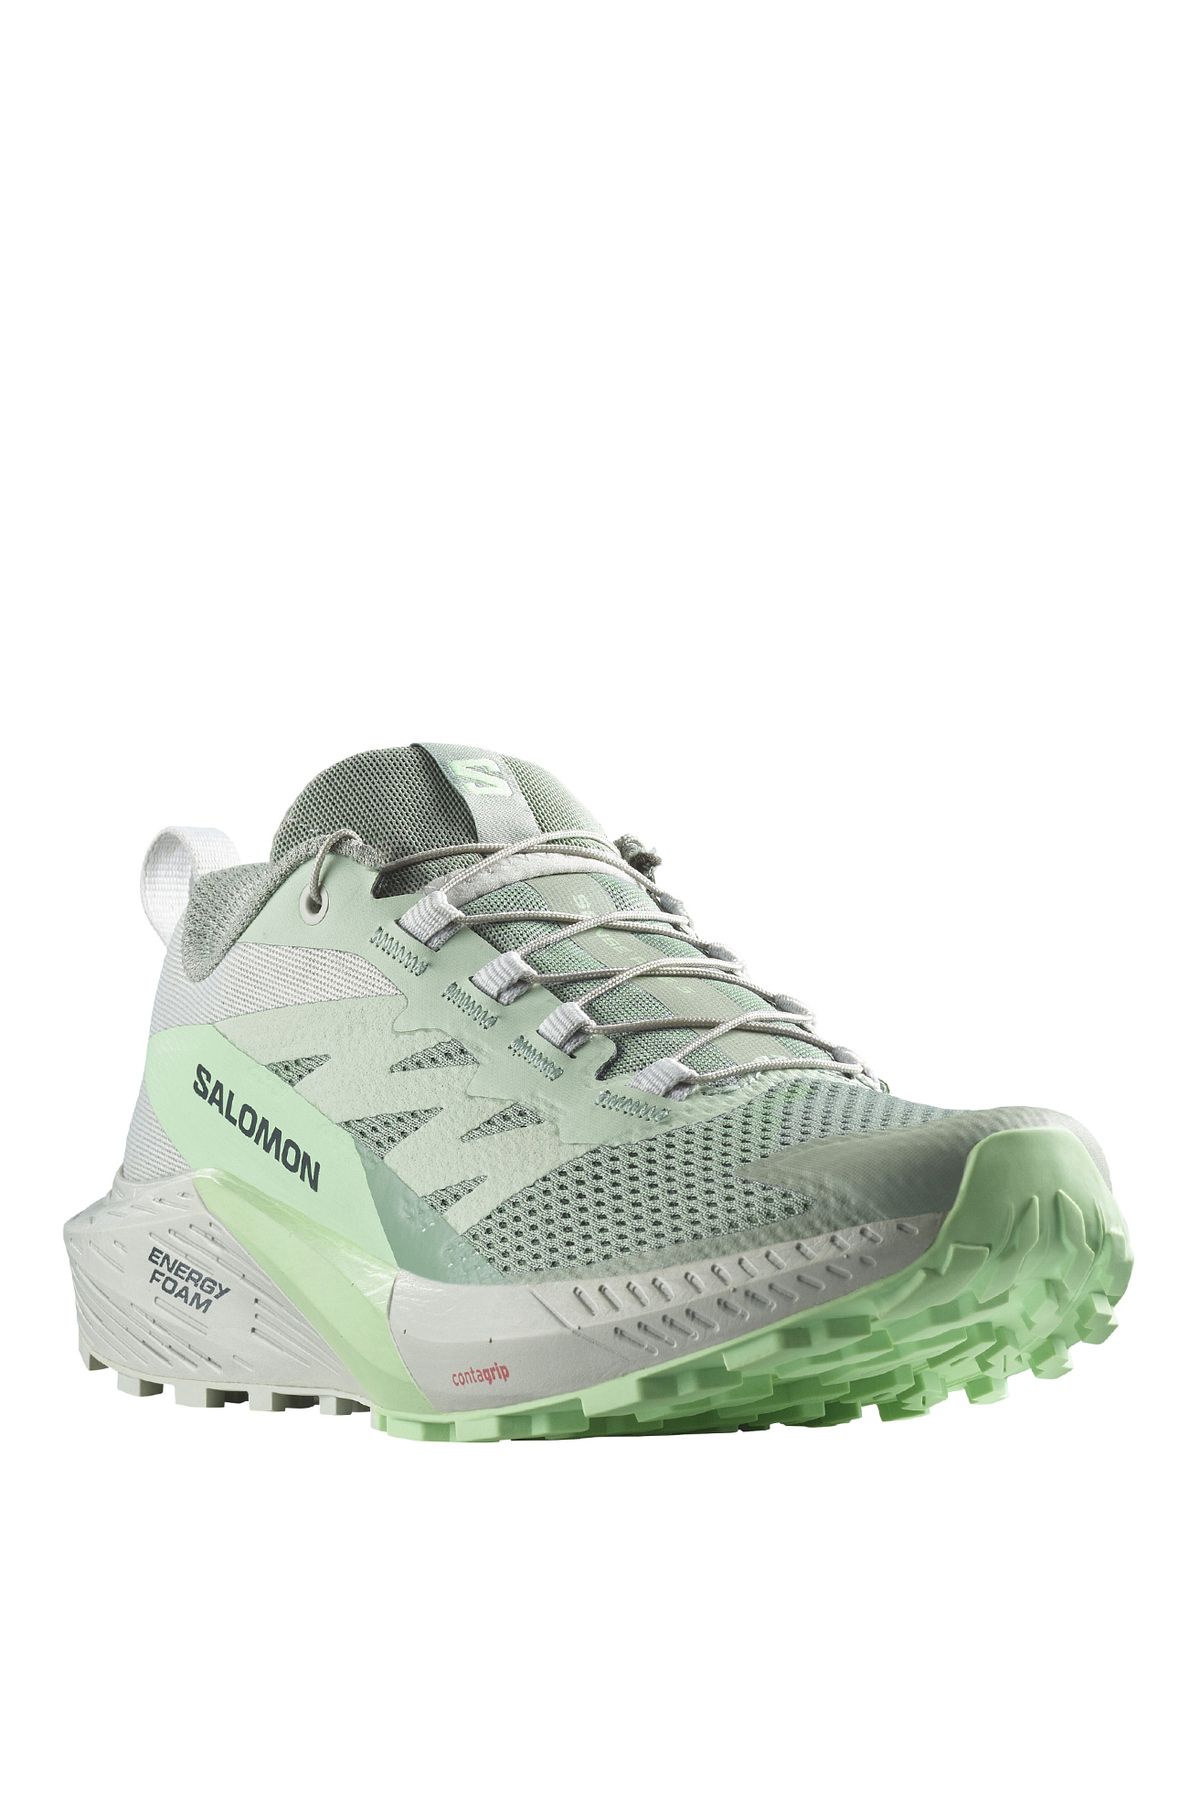 Salomon Yeşil Kadın Koşu Ayakkabısı L47314100_SENSE RIDE 5 W